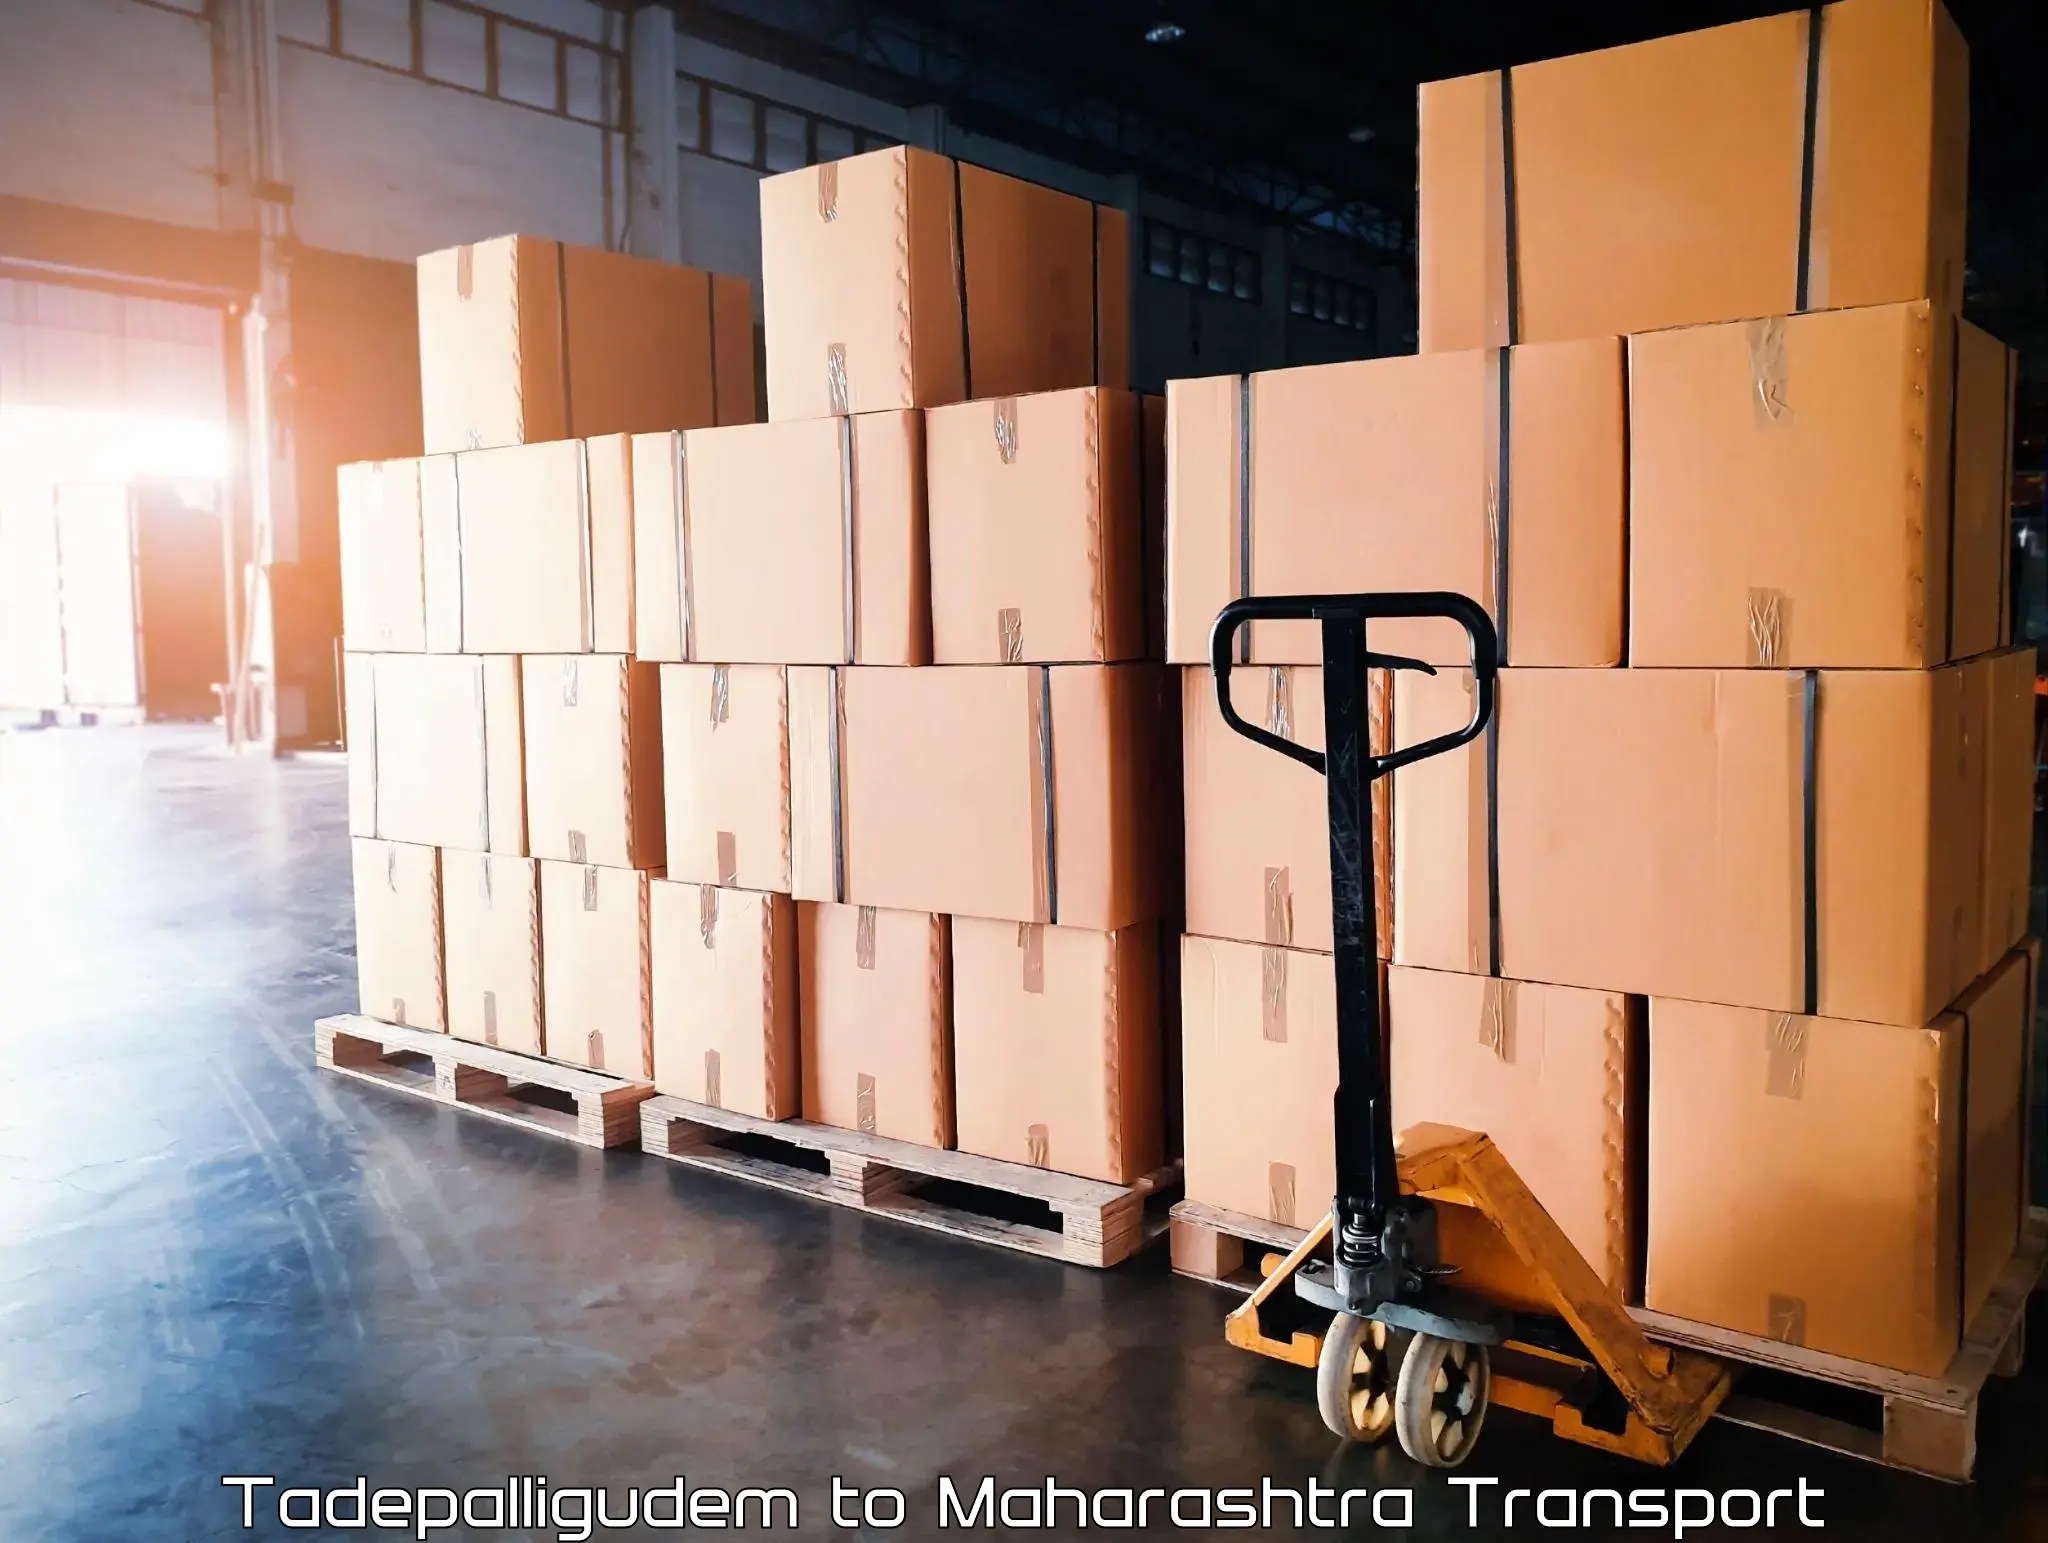 Furniture transport service Tadepalligudem to Tata Institute of Social Sciences Mumbai